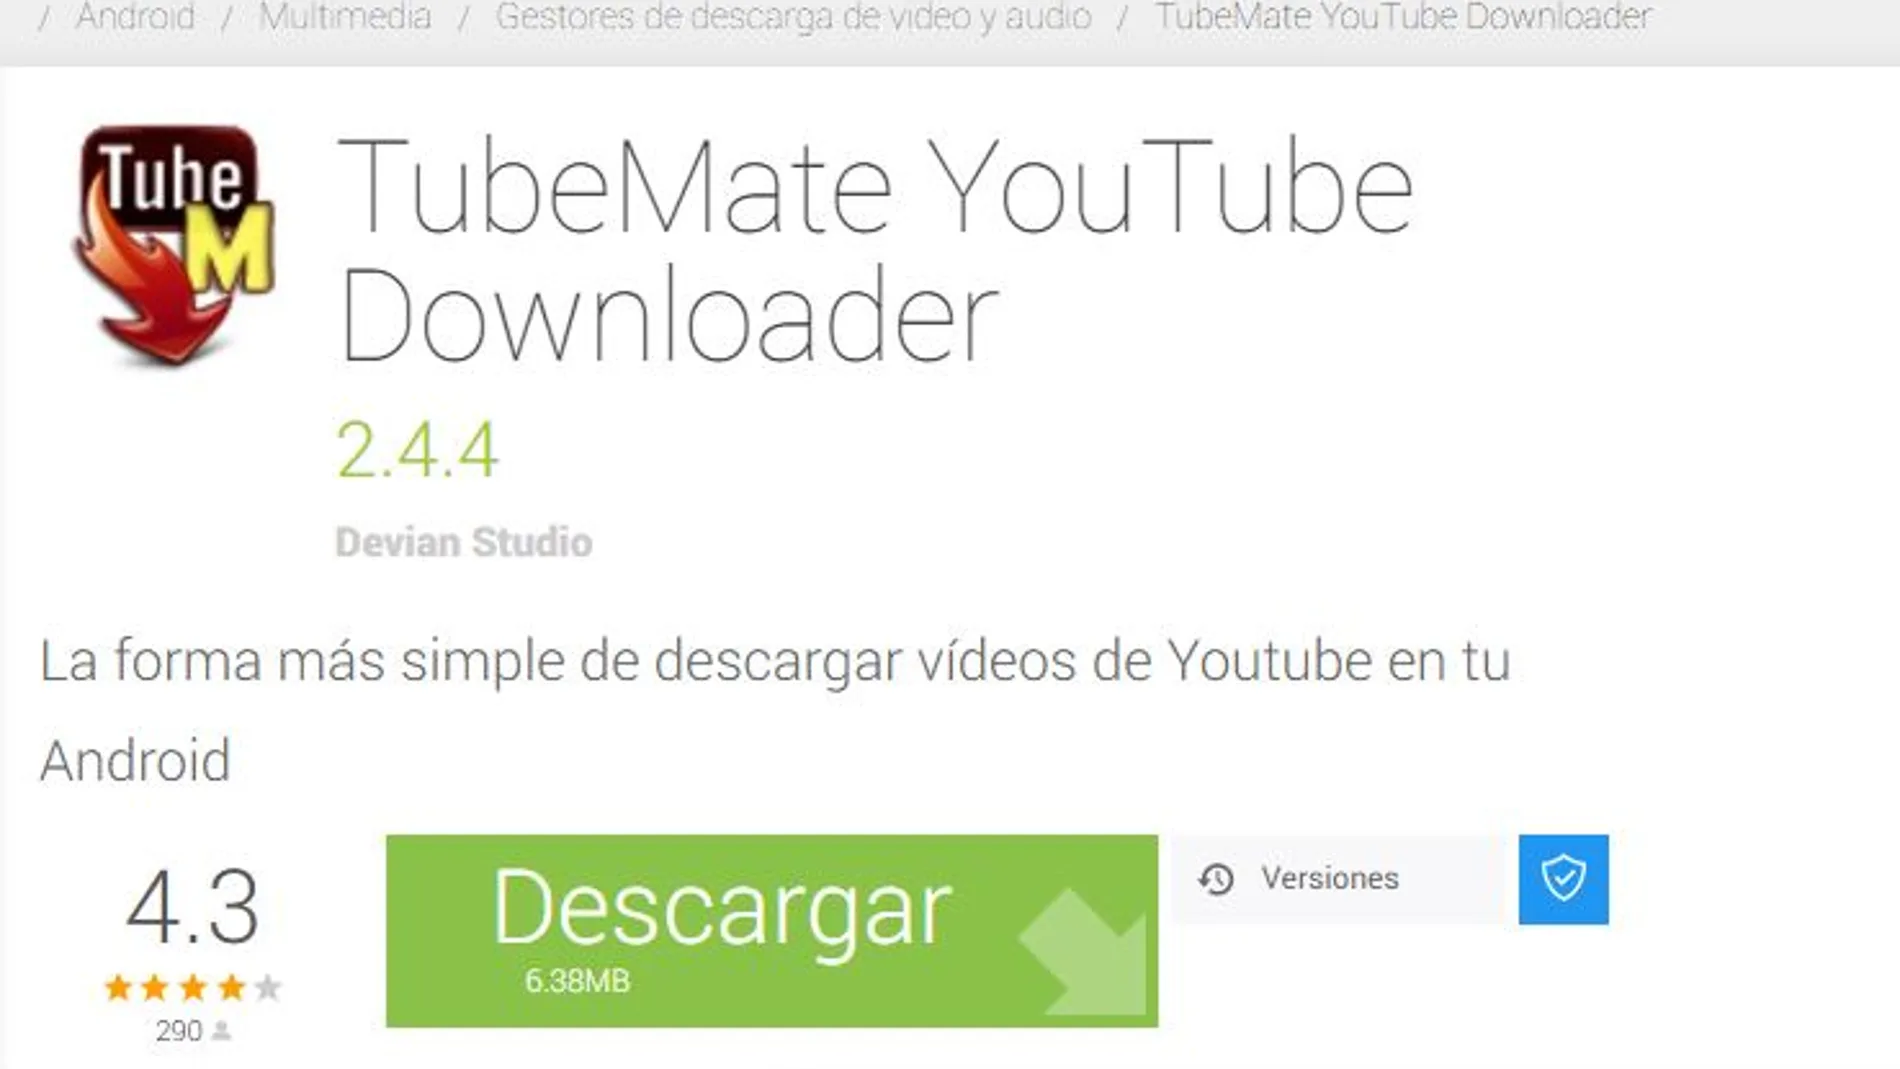 TubeMate YouTube Downloader, la más demandada